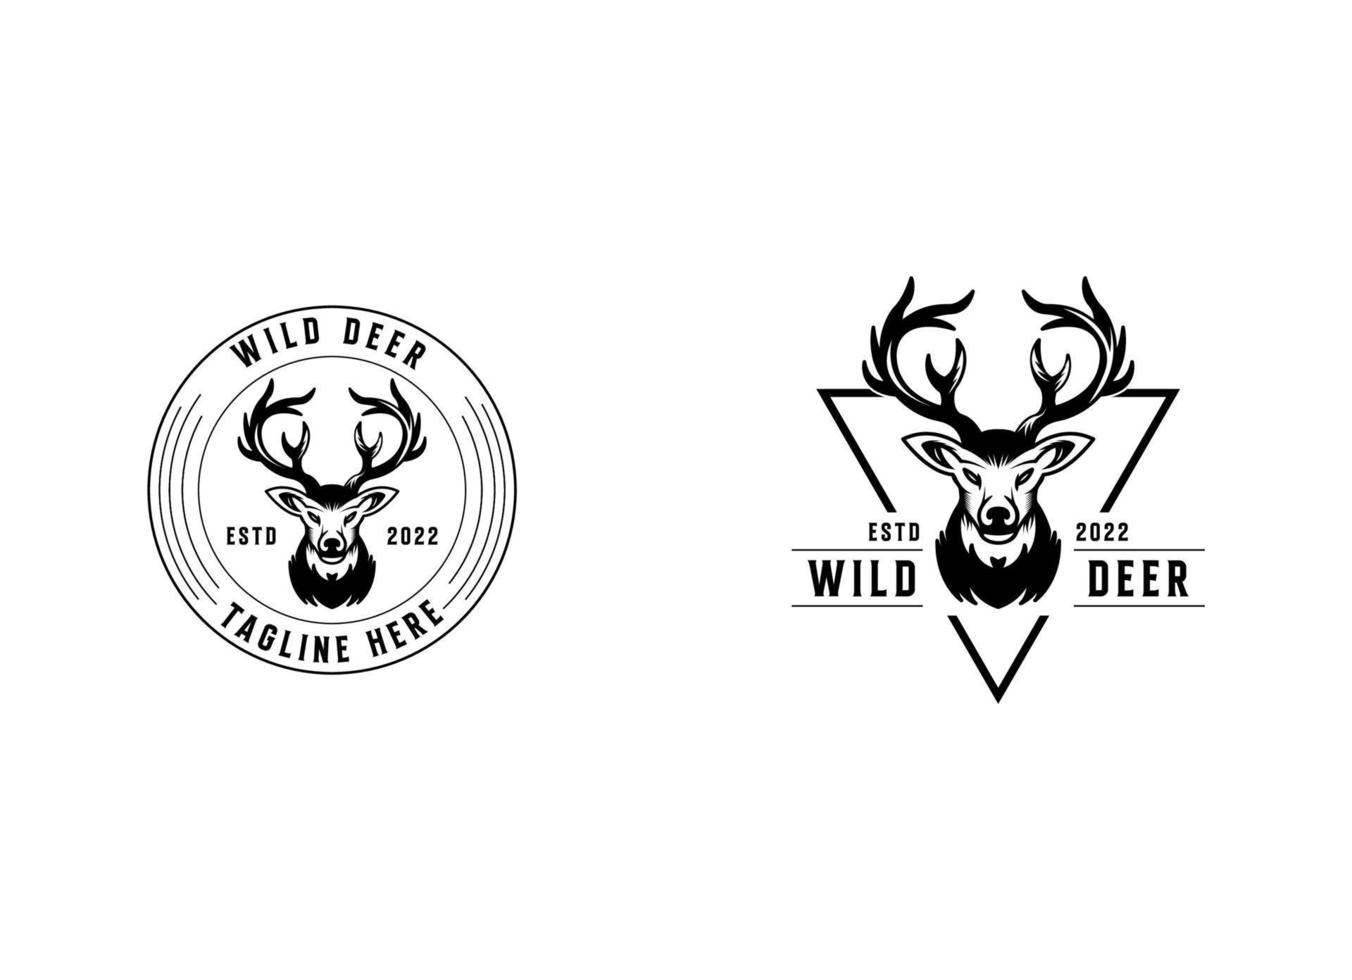 tipo, modello e vettore del logo del cacciatore di cervi